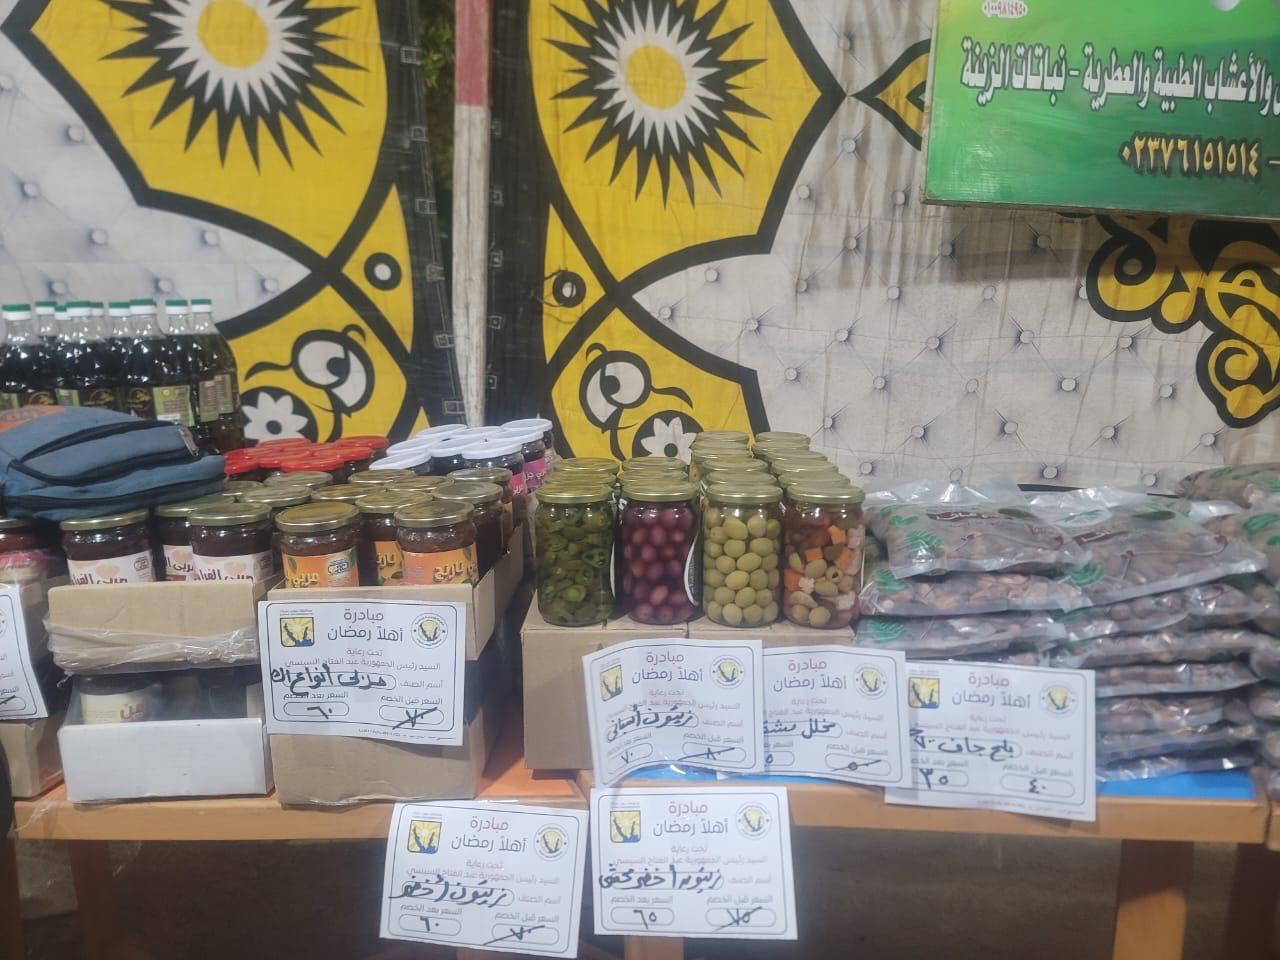 "الزراعة" تشارك بمنتجاتها في معارض جنوب سيناء للسلع الغذائية بأسعار مخفضة 6